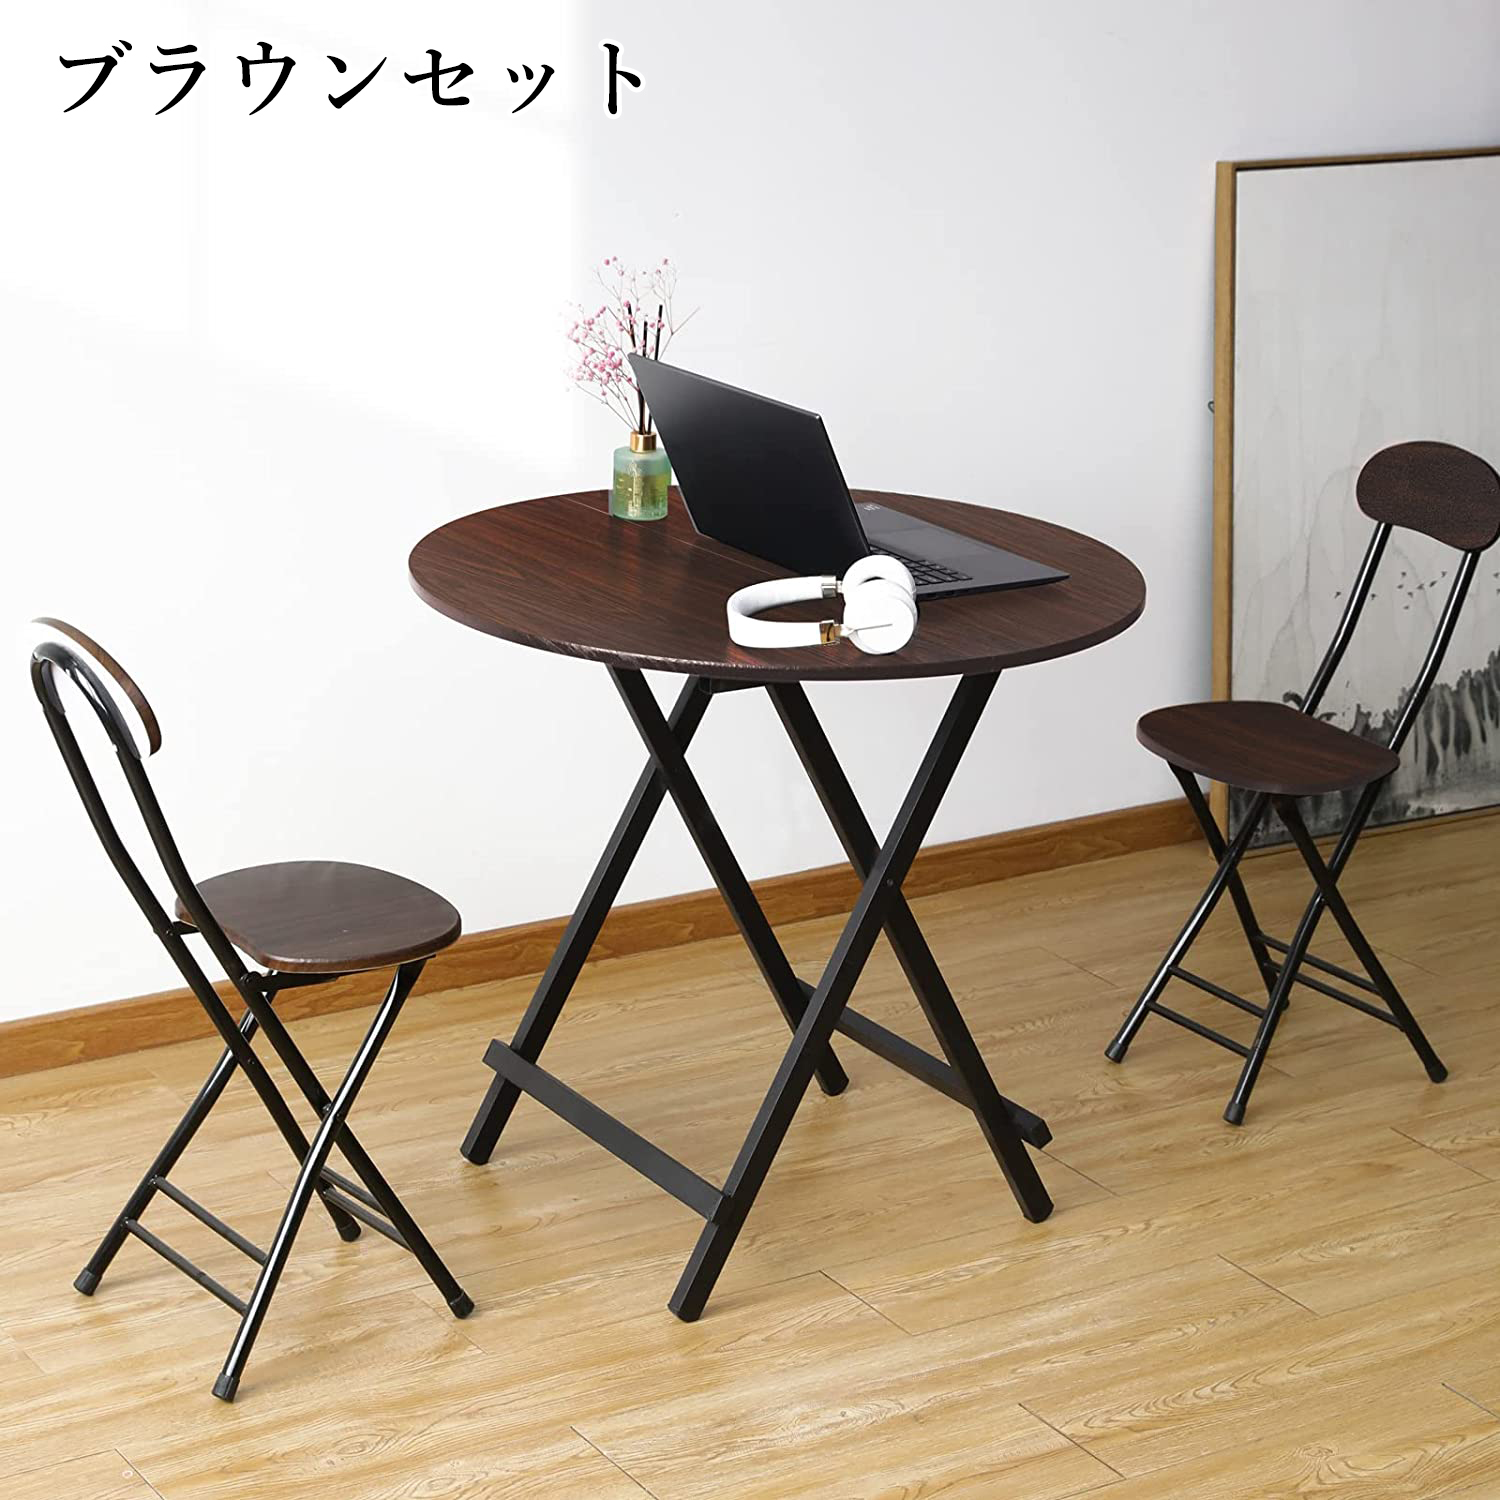 「PROBASTO」折りたたみテーブル&チェアセット 丸テーブル ダイニングテーブル パイプ椅子 組立不要 完成品 食事 作業 在宅勤務 おしゃれ  2人用 3点セット